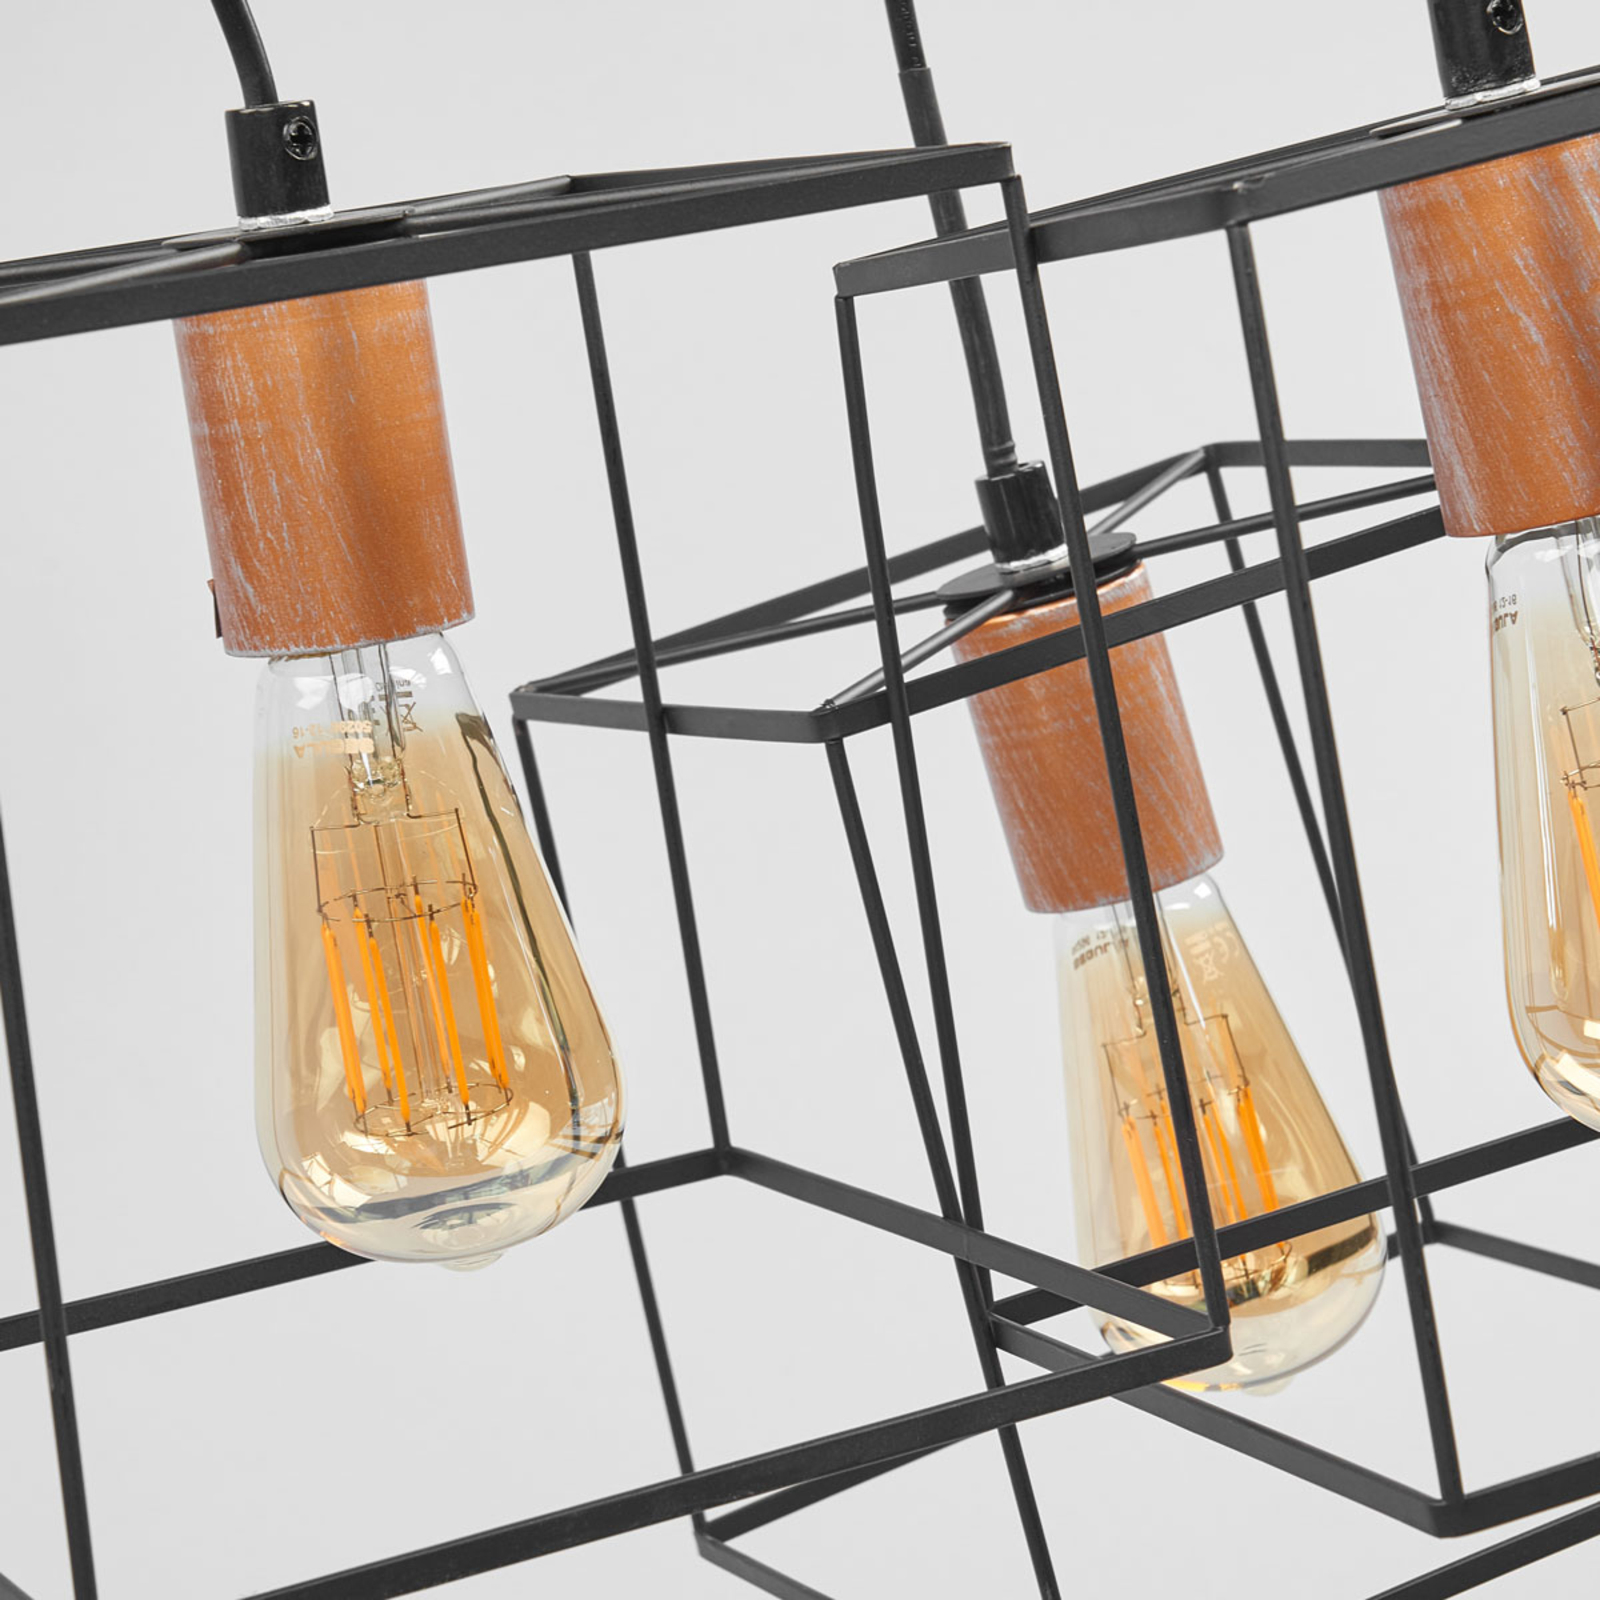 Hanglamp Agatha in vintage-look drie lichtbronnen